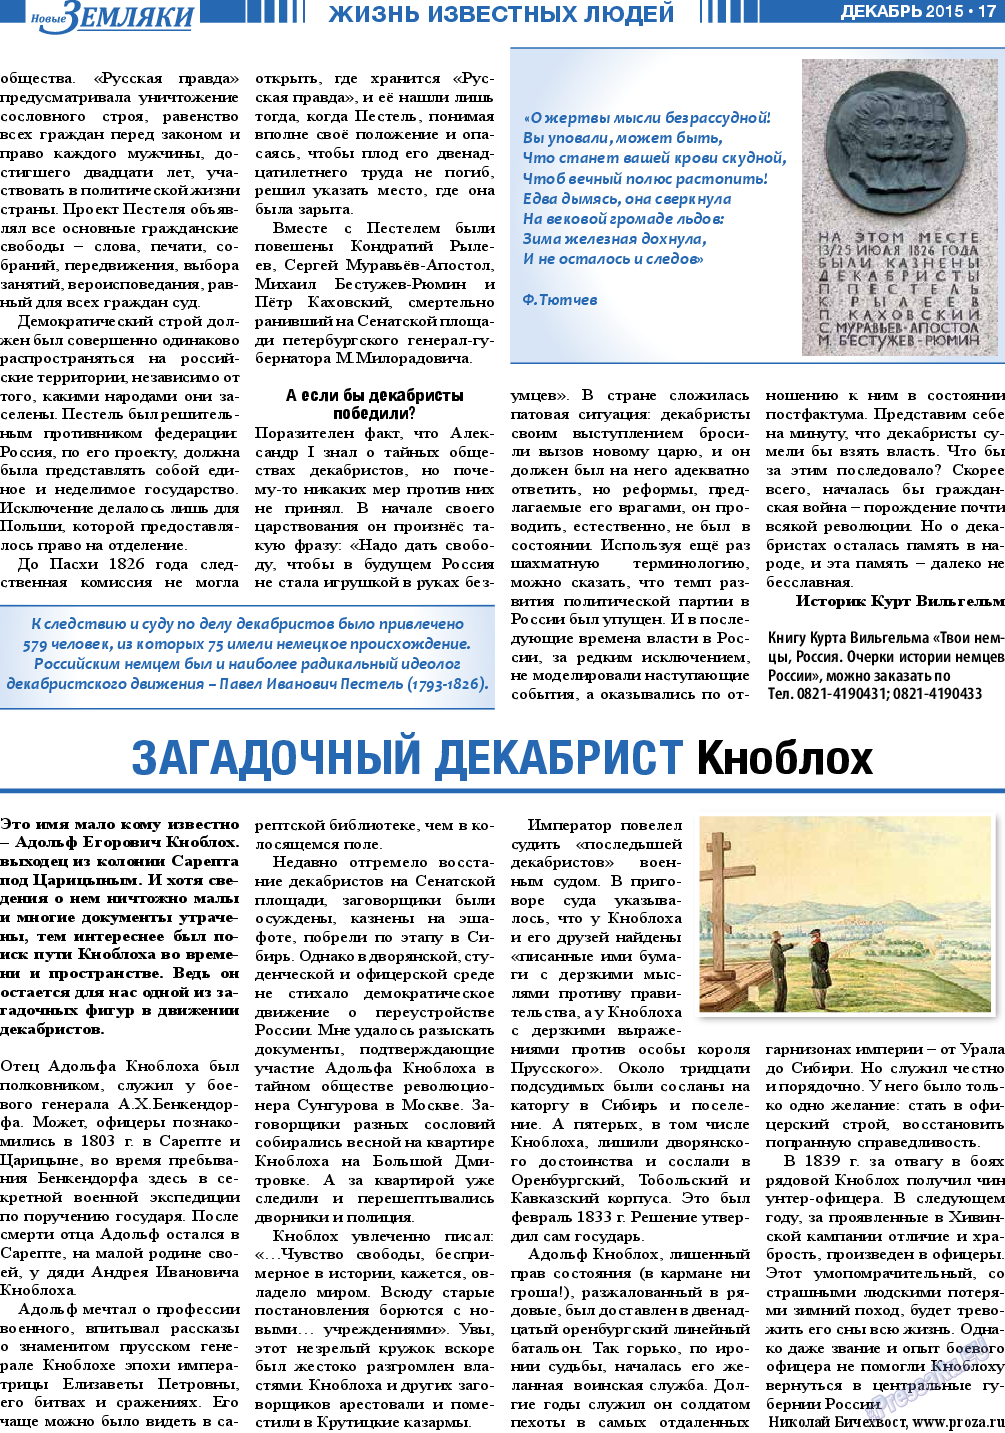 Новые Земляки (газета). 2015 год, номер 12, стр. 17